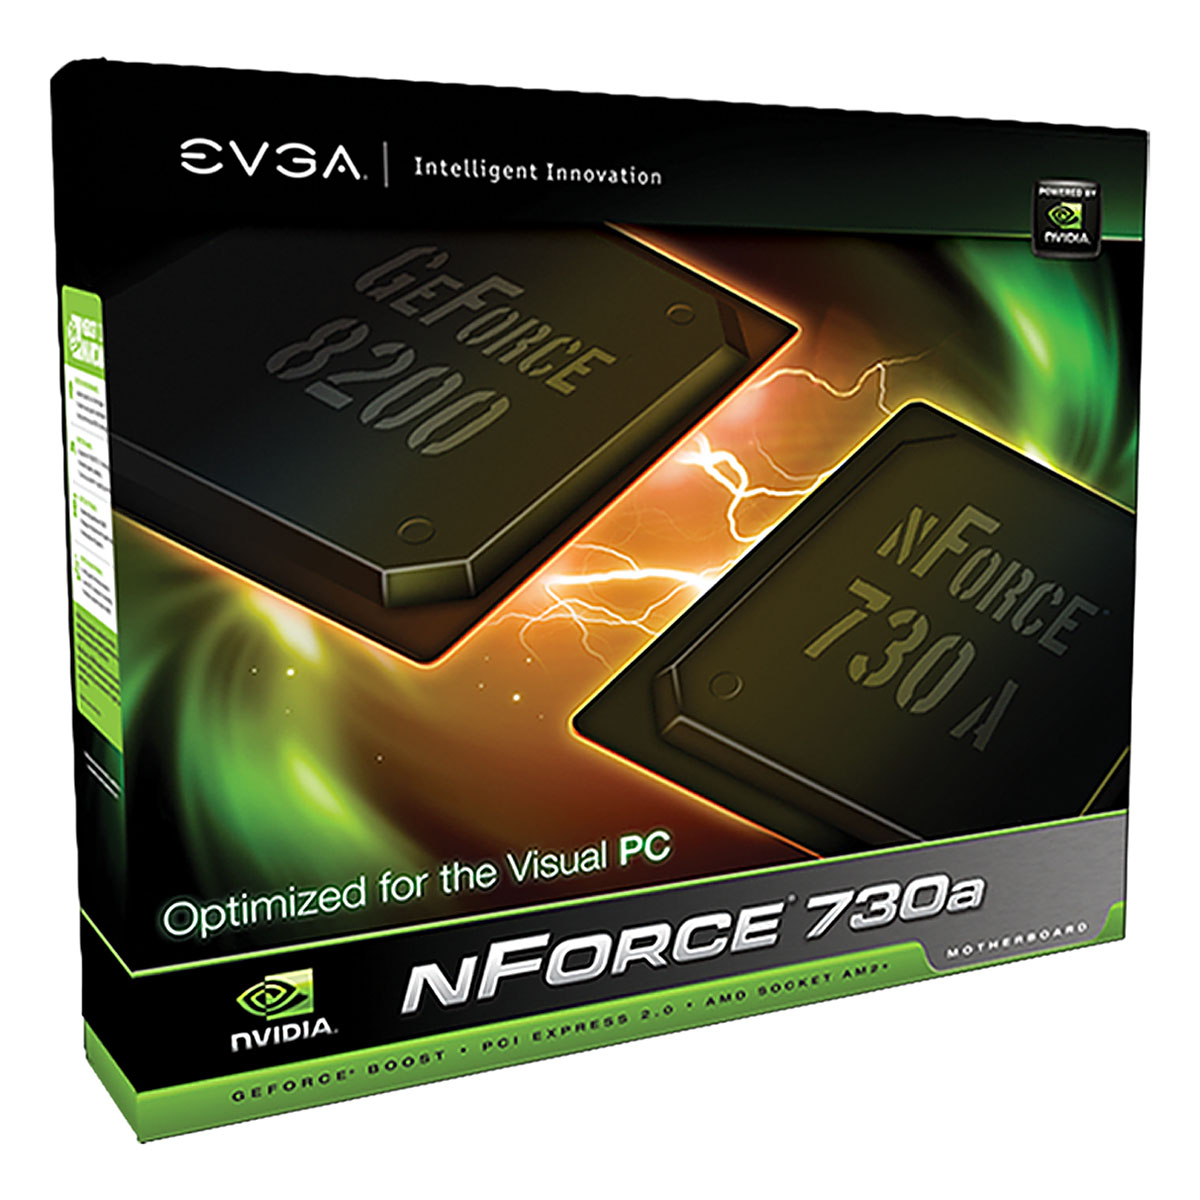 Immagine pubblicata in relazione al seguente contenuto: EVGA commercializza la motherboard nForce 730a per cpu AM2+ | Nome immagine: news9075_3.jpg